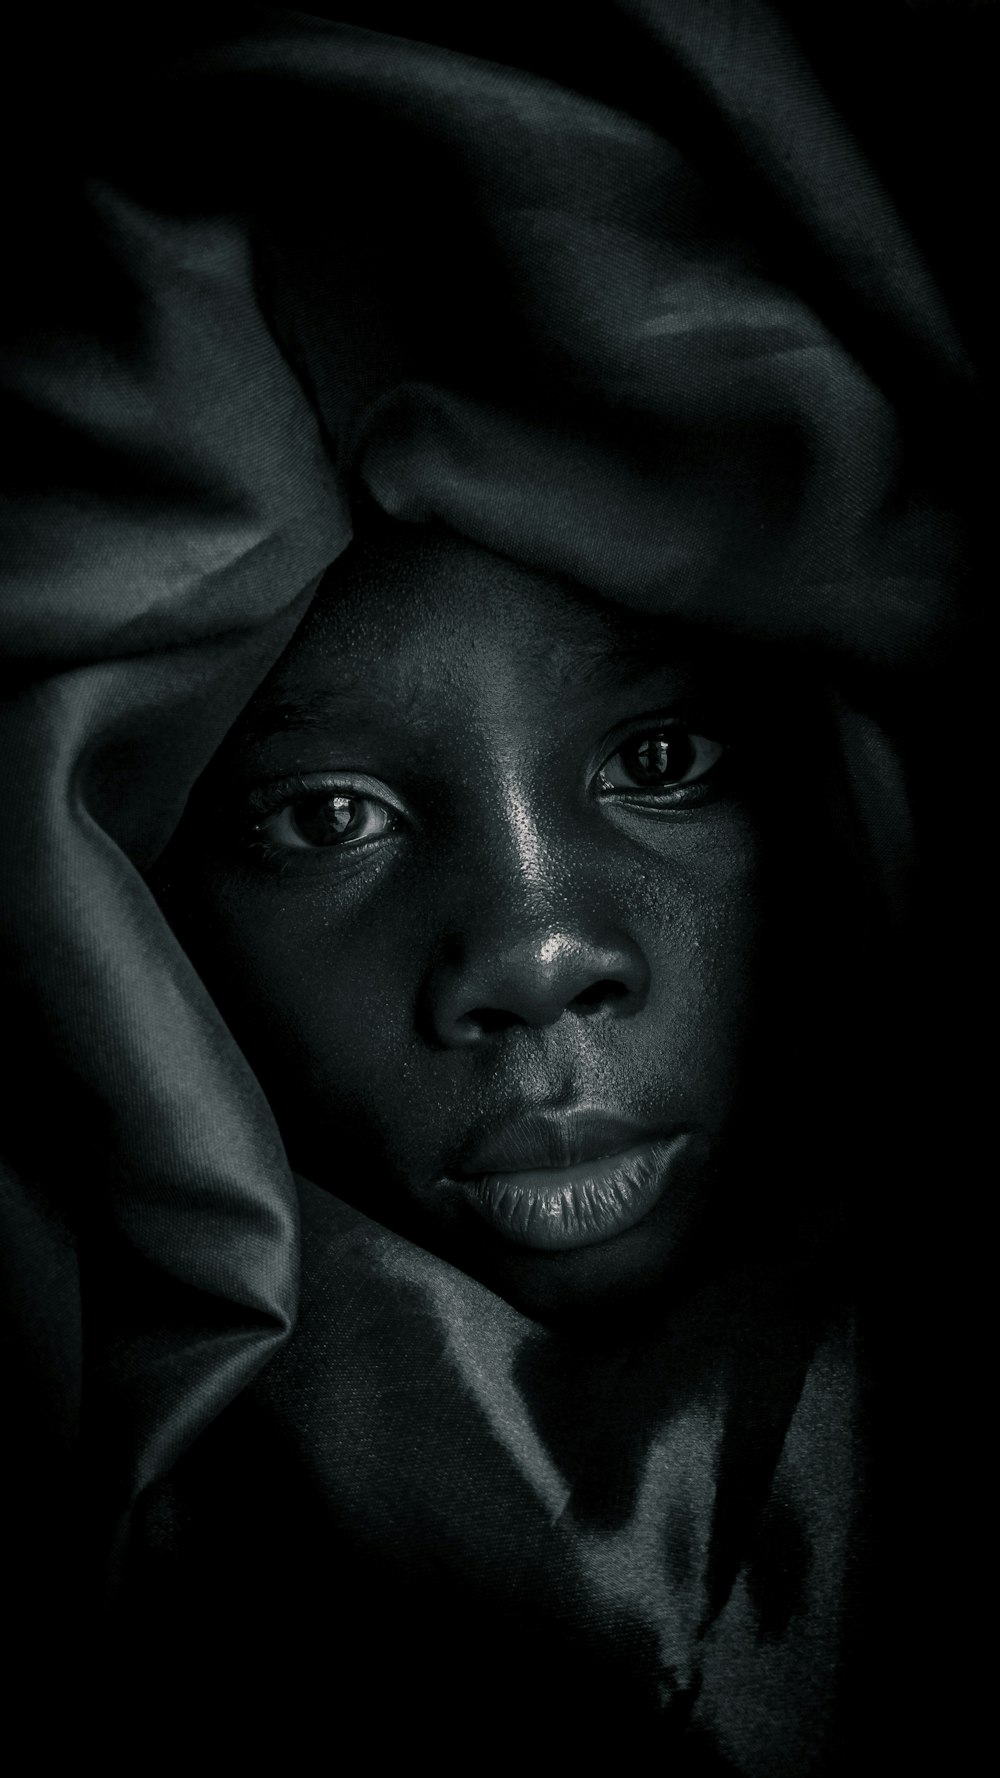 Una foto in bianco e nero di una donna con una coperta sopra la testa